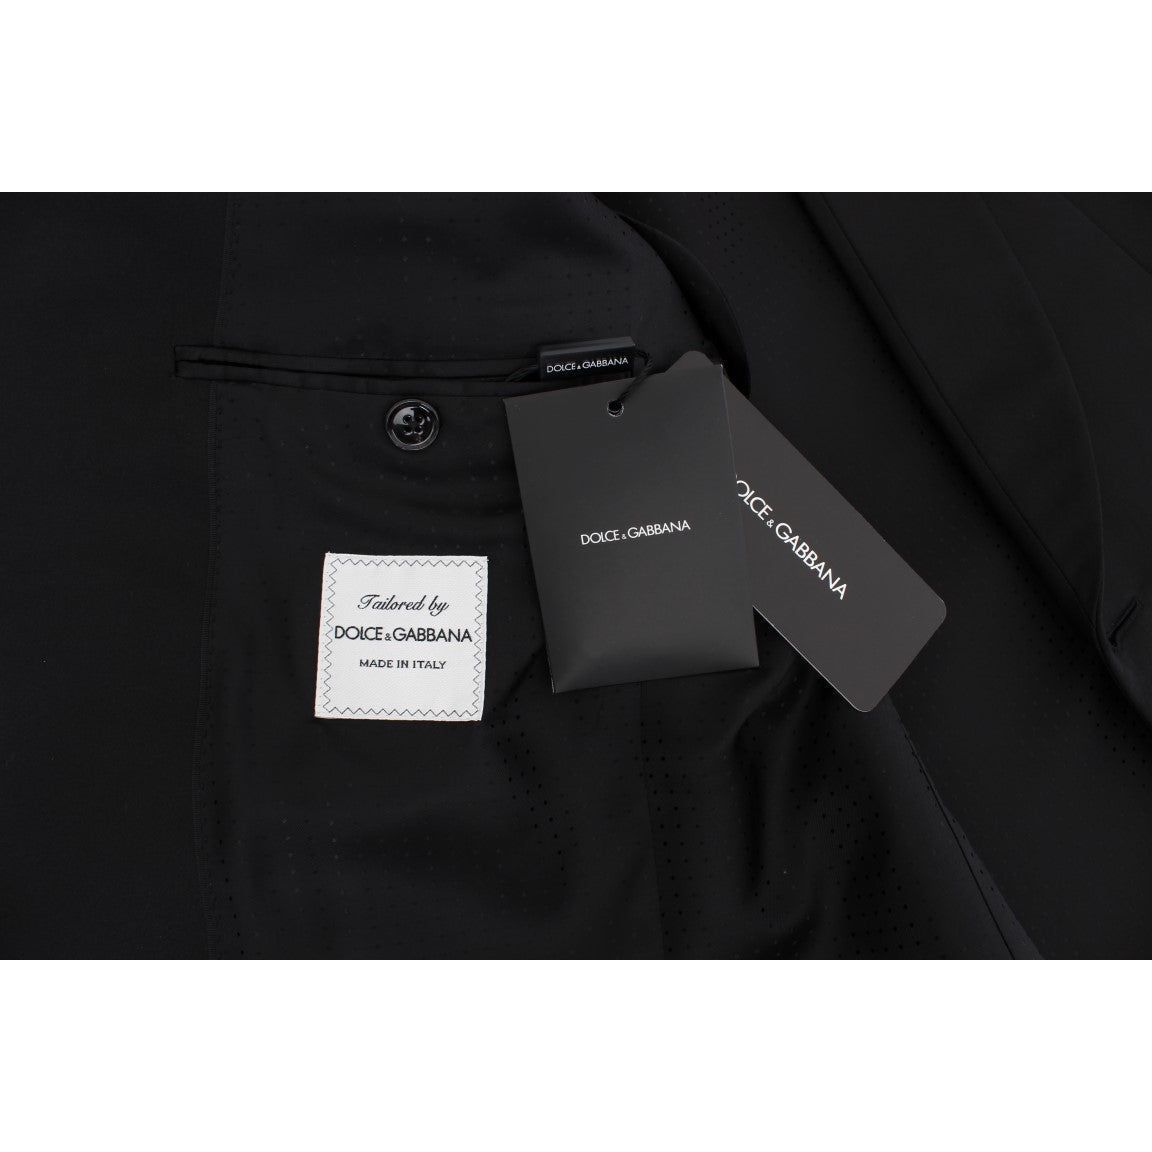 Dolce & Gabbana Exclusive Black Silk One Button Blazer black-silk-slim-one-button-blazer 223309-black-silk-slim-one-button-blazer-7.jpg